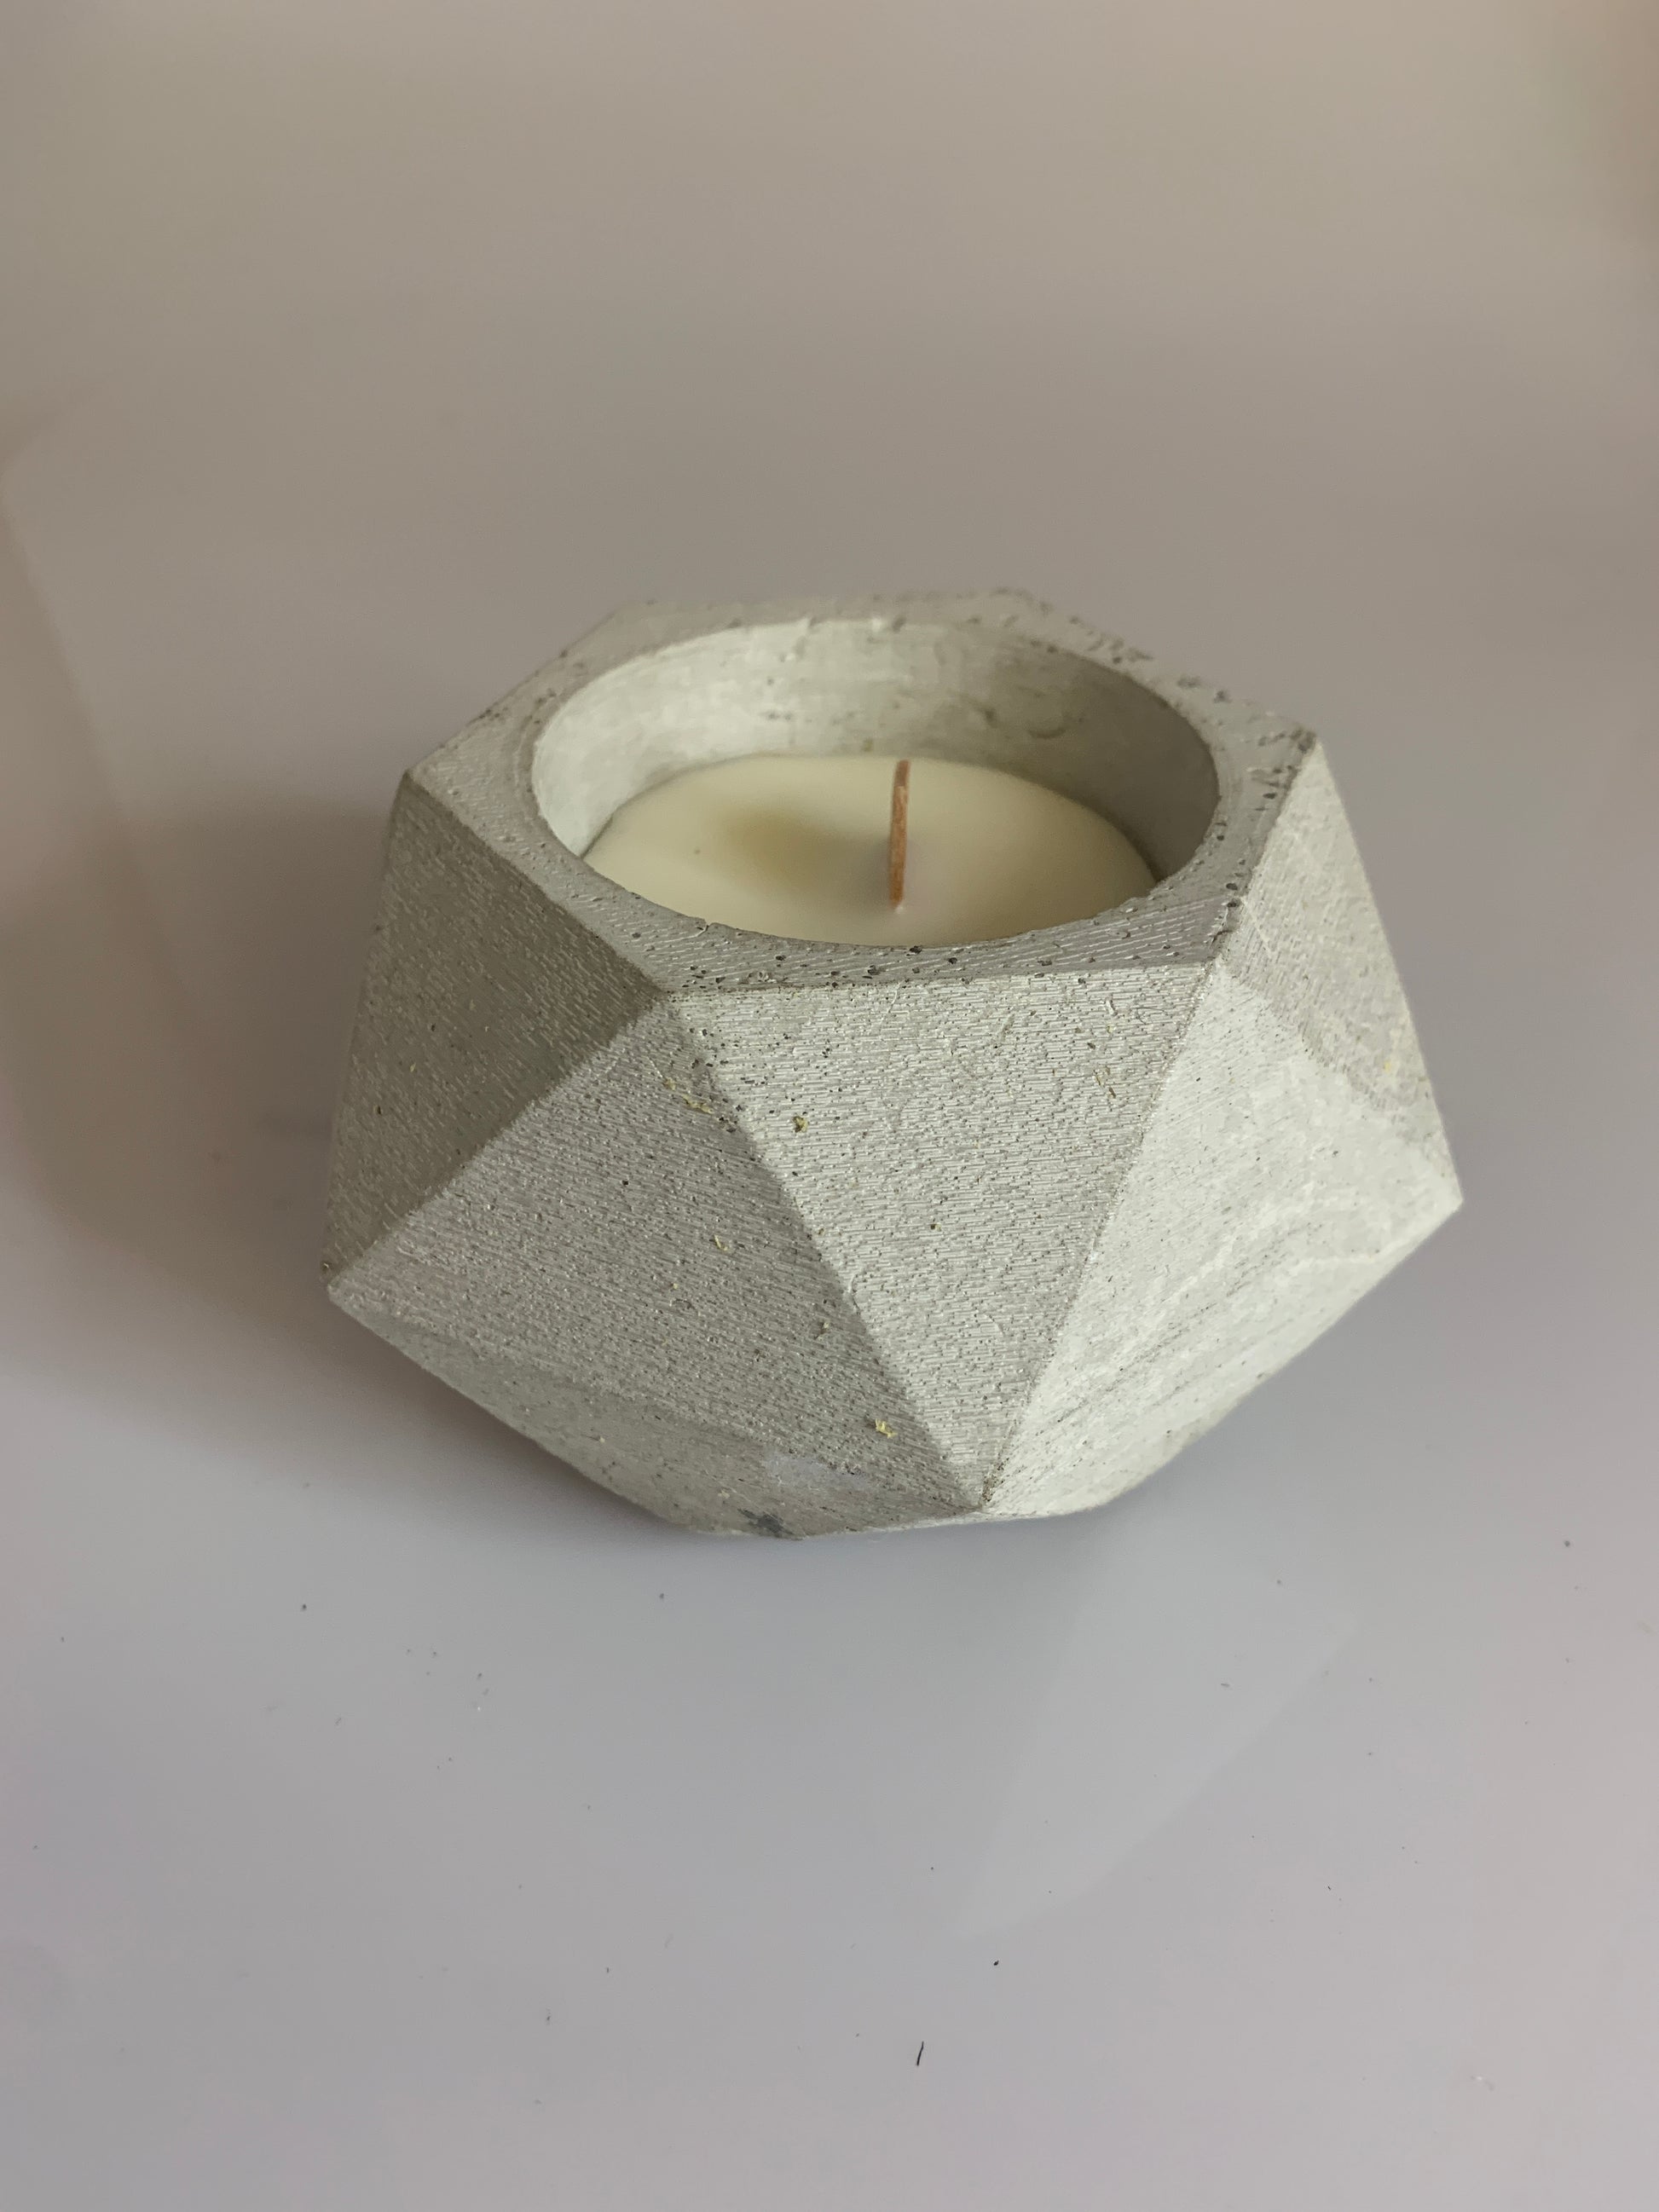 candela in cemento e cera di soia profumata con oli essenziali naturali colore grigio cemento